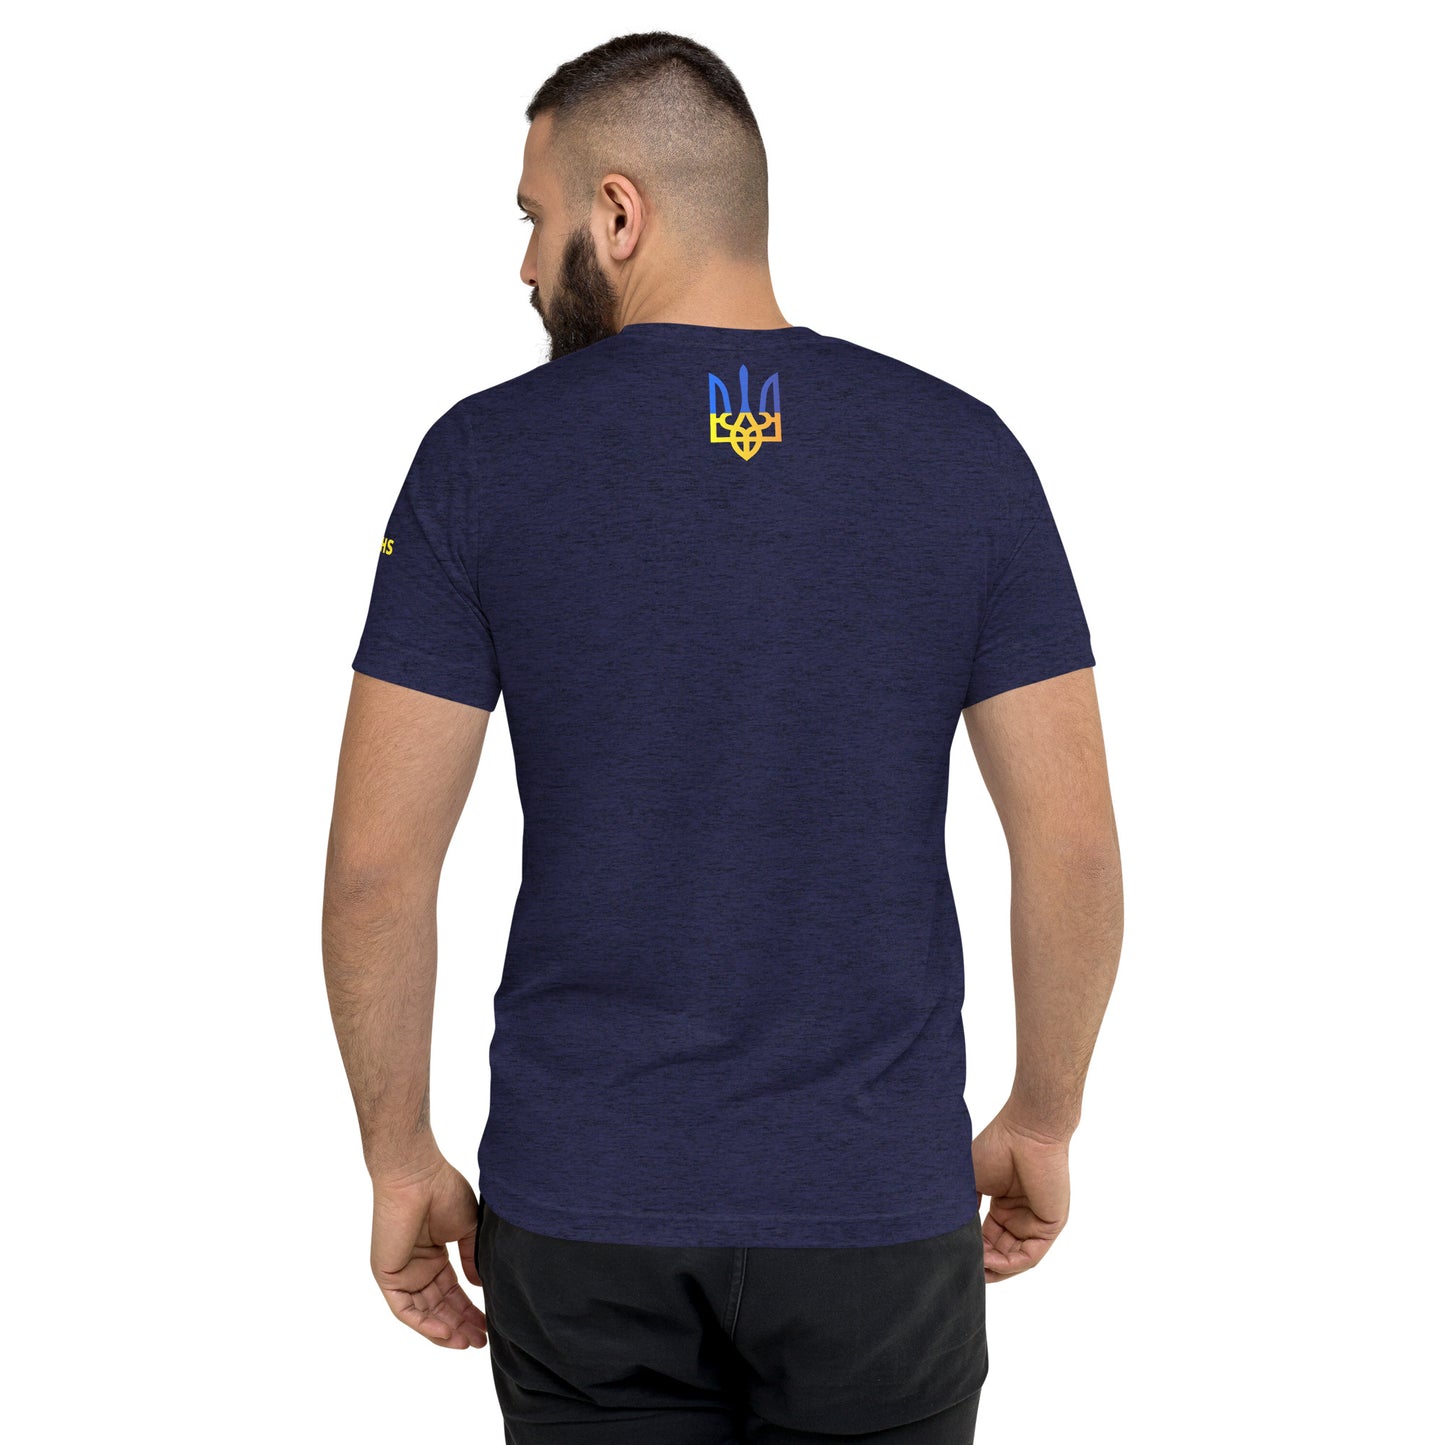 Short sleeve t-shirt | Pray for Ukraine